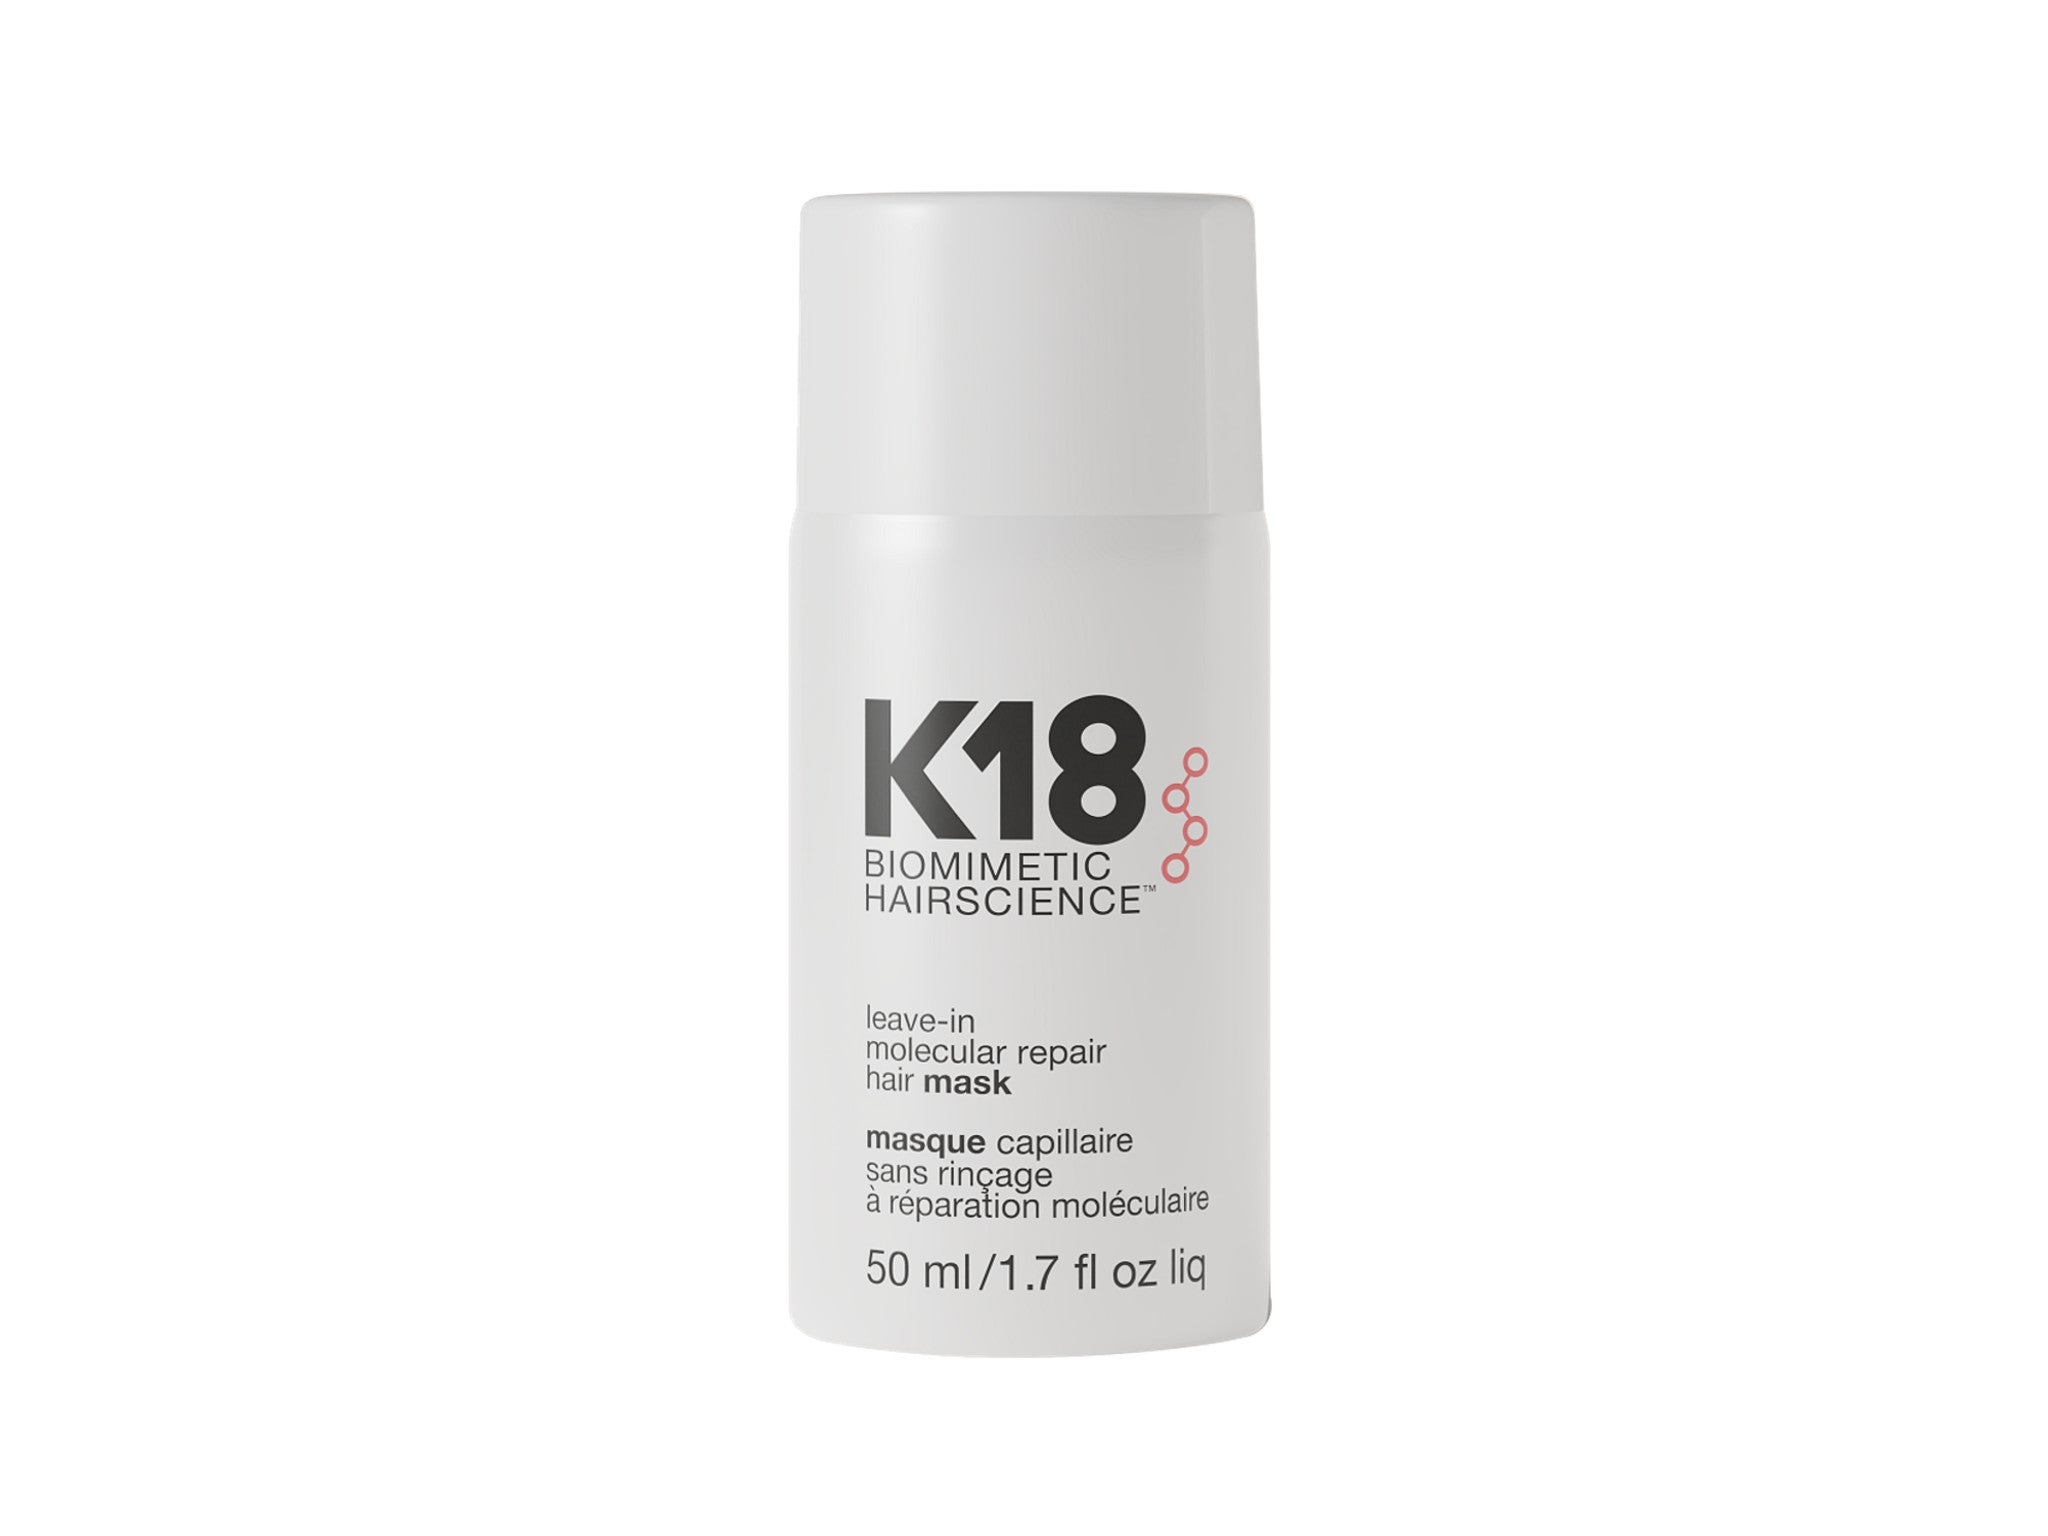 K18 leave-in molecular repair hair mask indybest.jpg